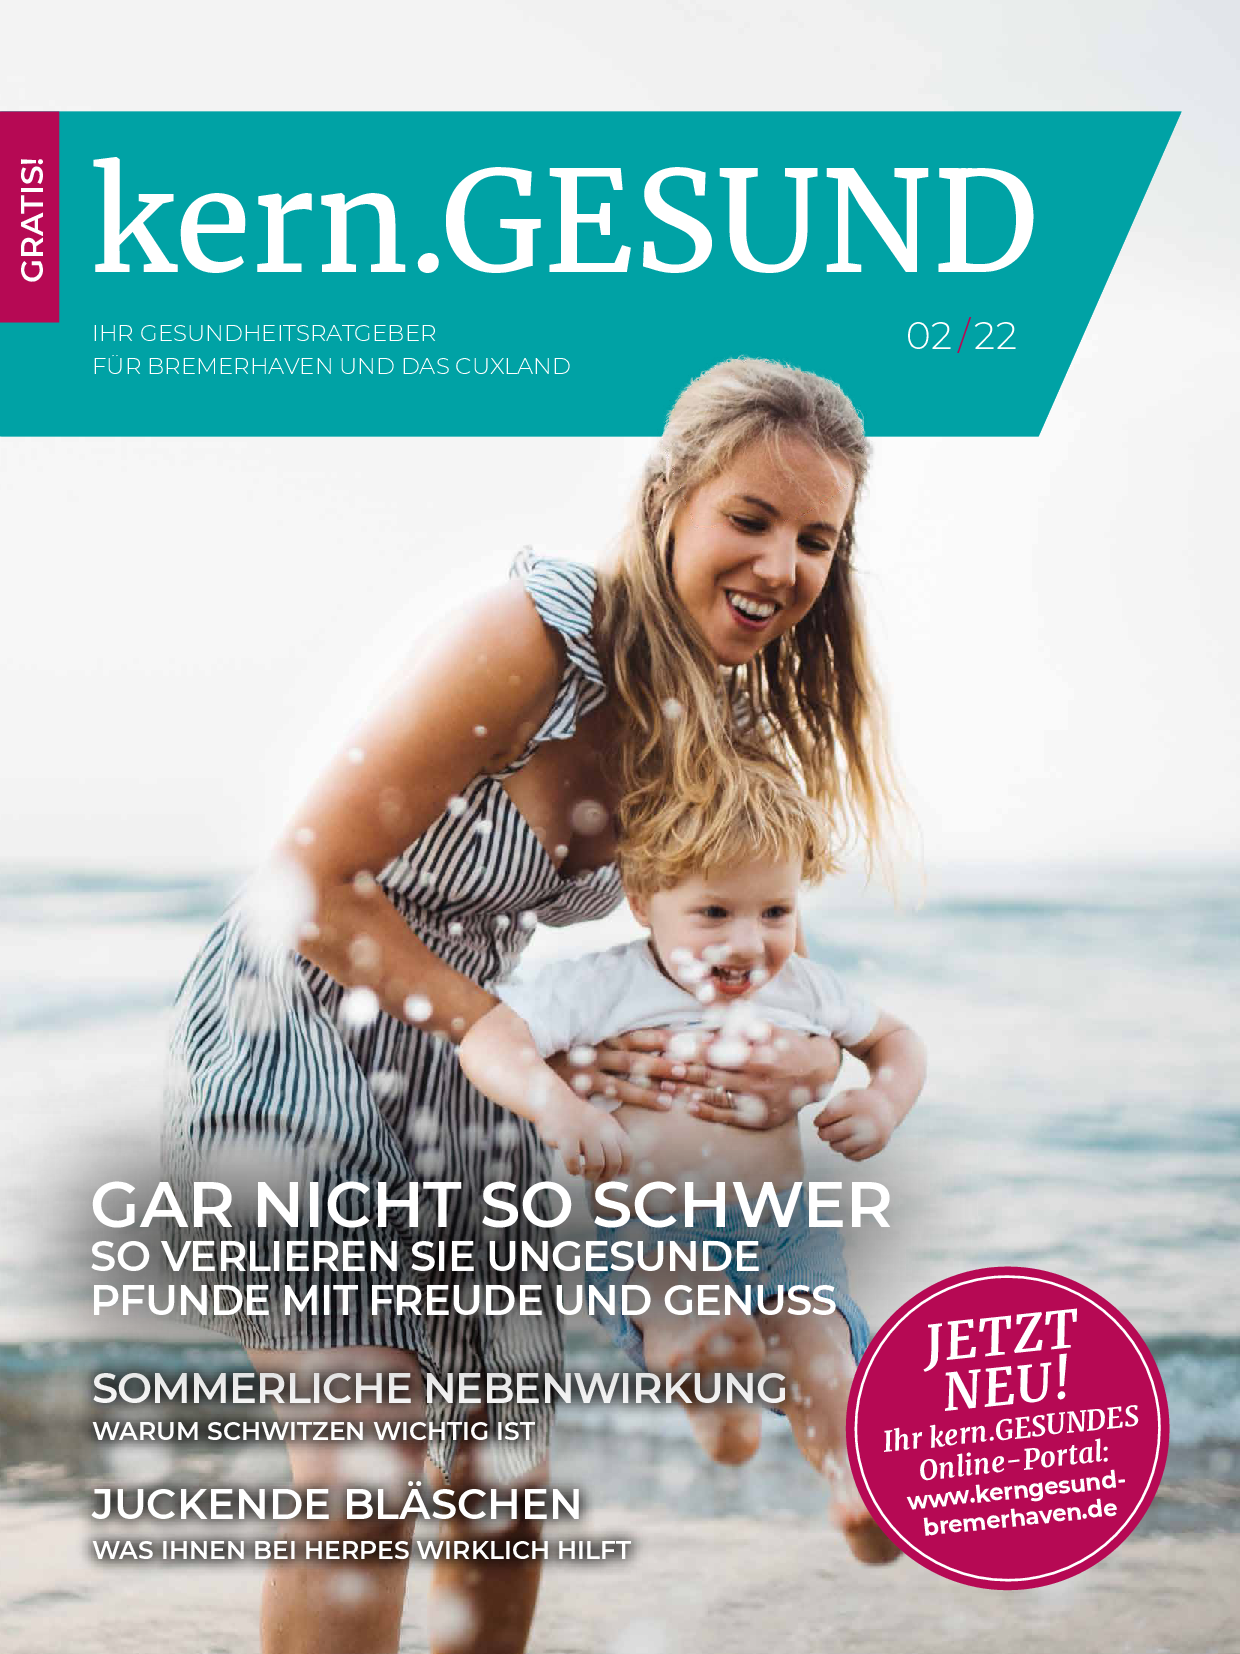 Cover der Zeitschrift "kern.GESUND". Eine Frau und ein Kleinkind spielen am Strand im Wasser.